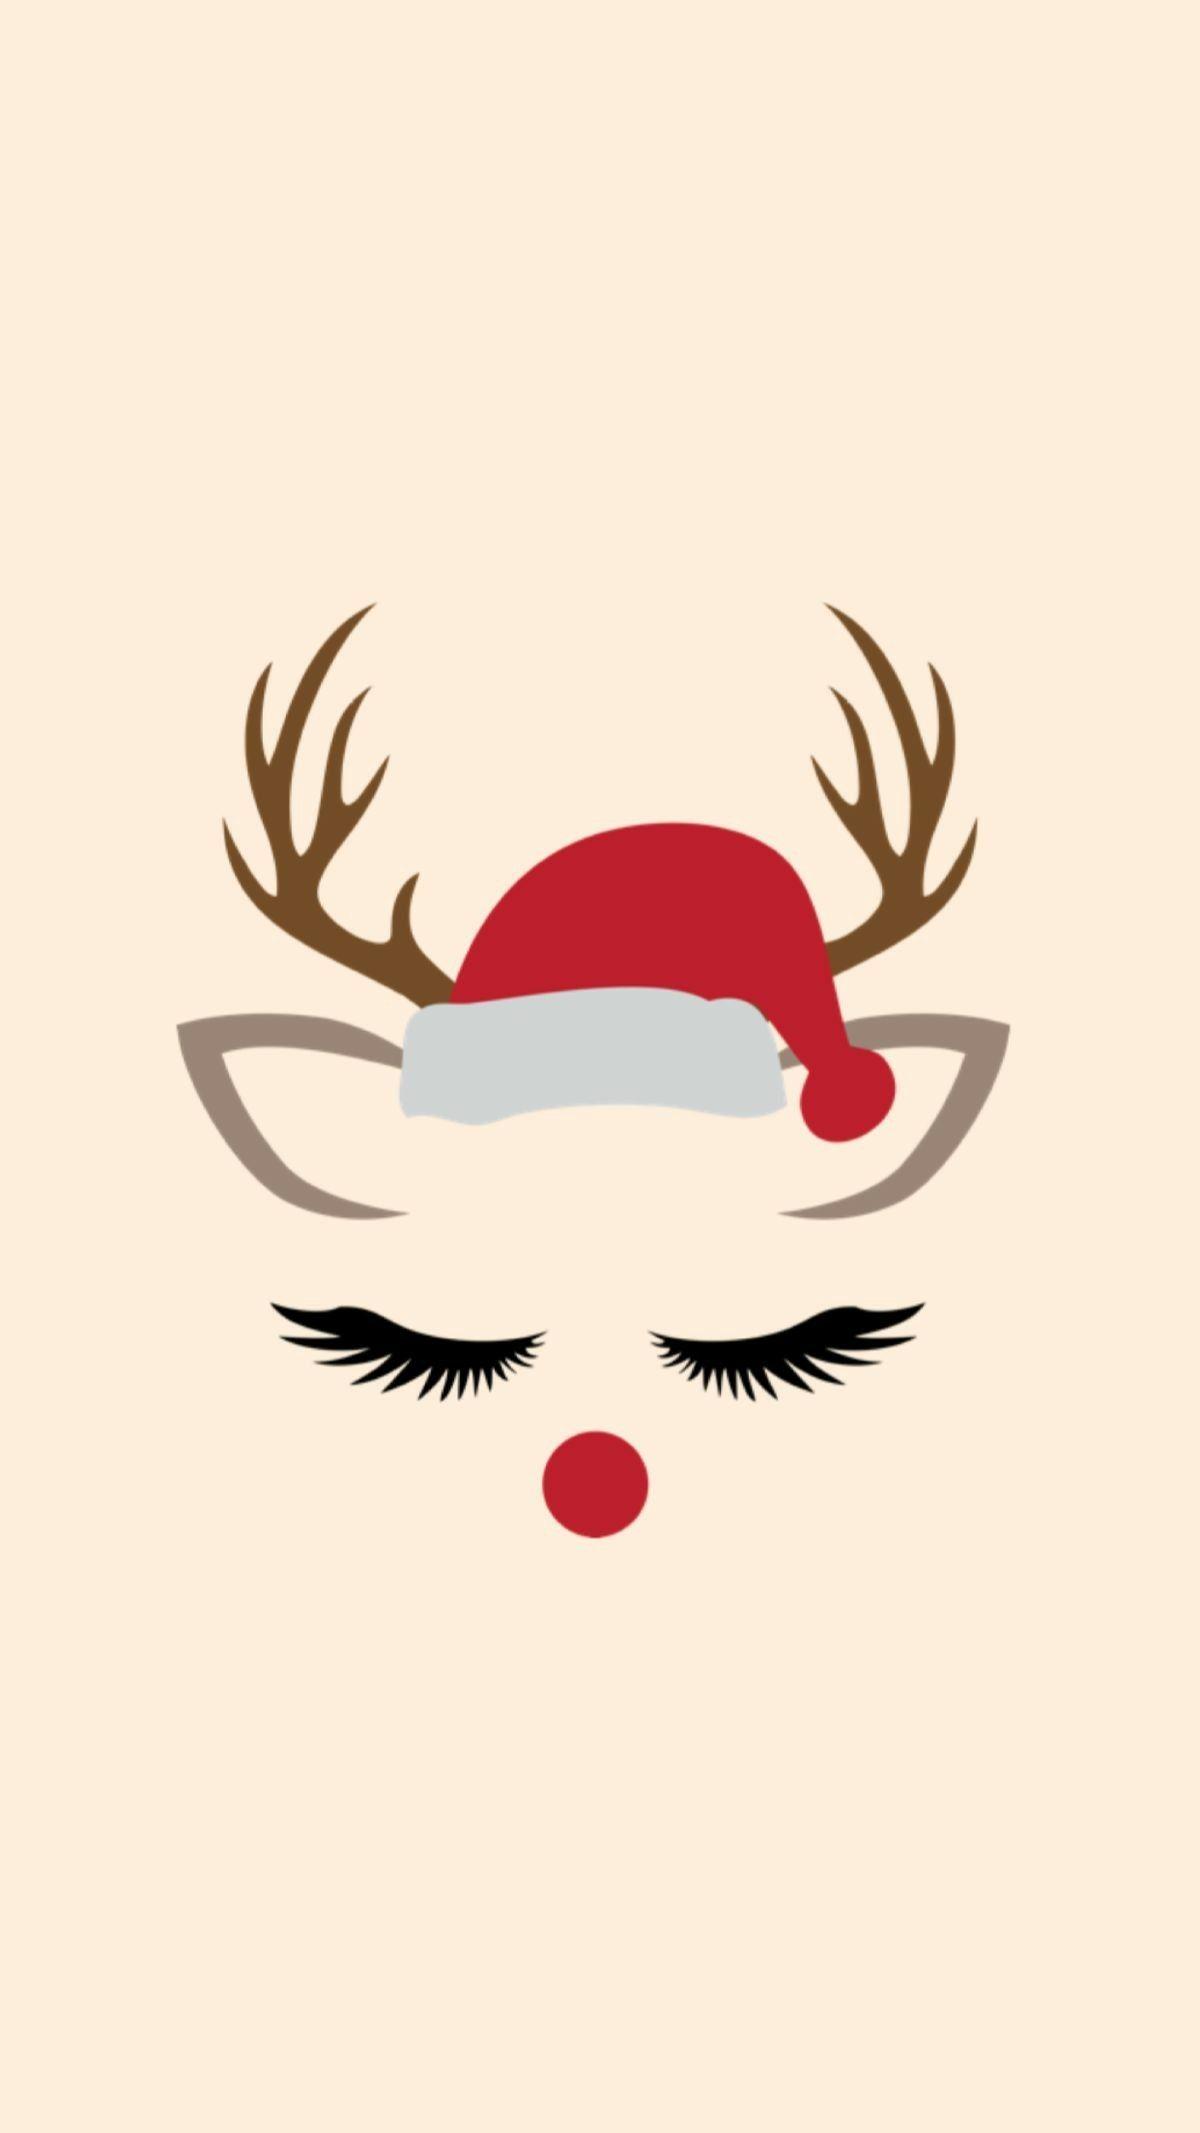 Rudolph. Christmas image. Christmas wallpaper